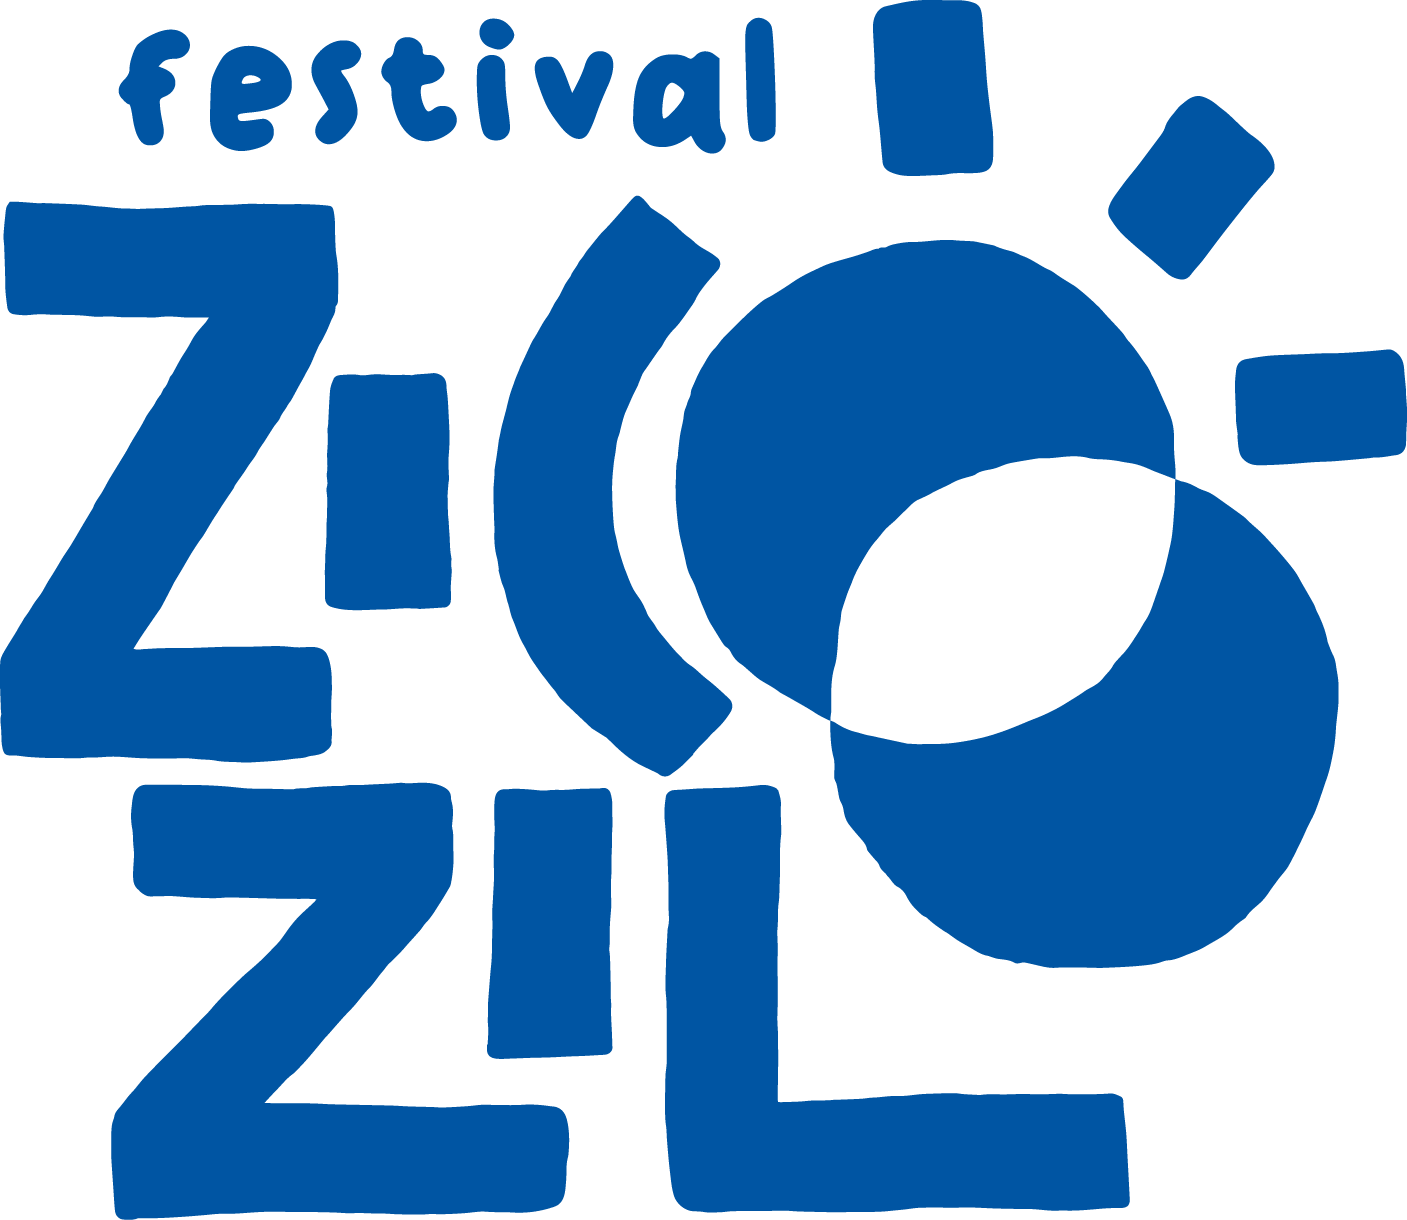 Festival Zicozilo